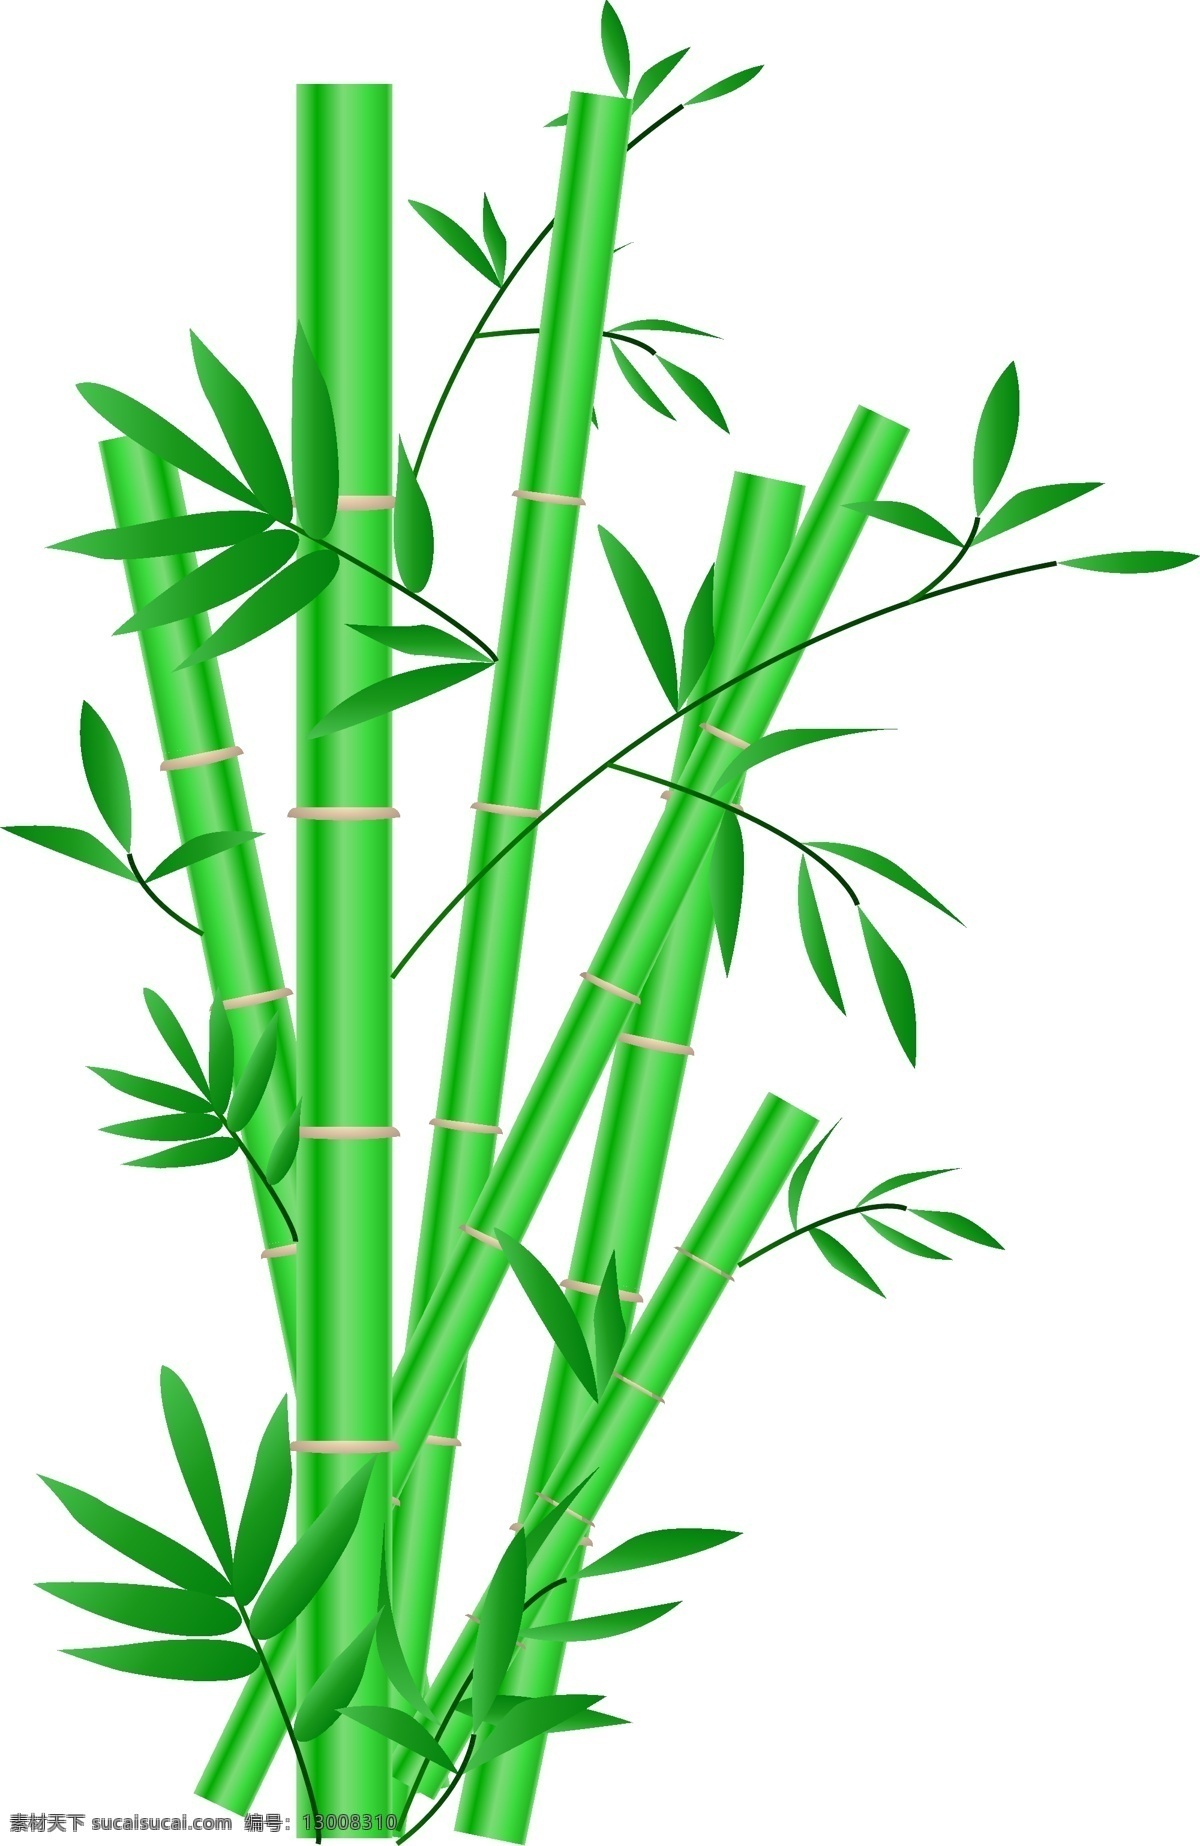 手绘 绿色 竹子 插画 手绘卡通 中国风 翠竹 手绘竹子插画 文征明的竹子 写意的绘画 绿色的叶子 绿色的竹子 卡通插画